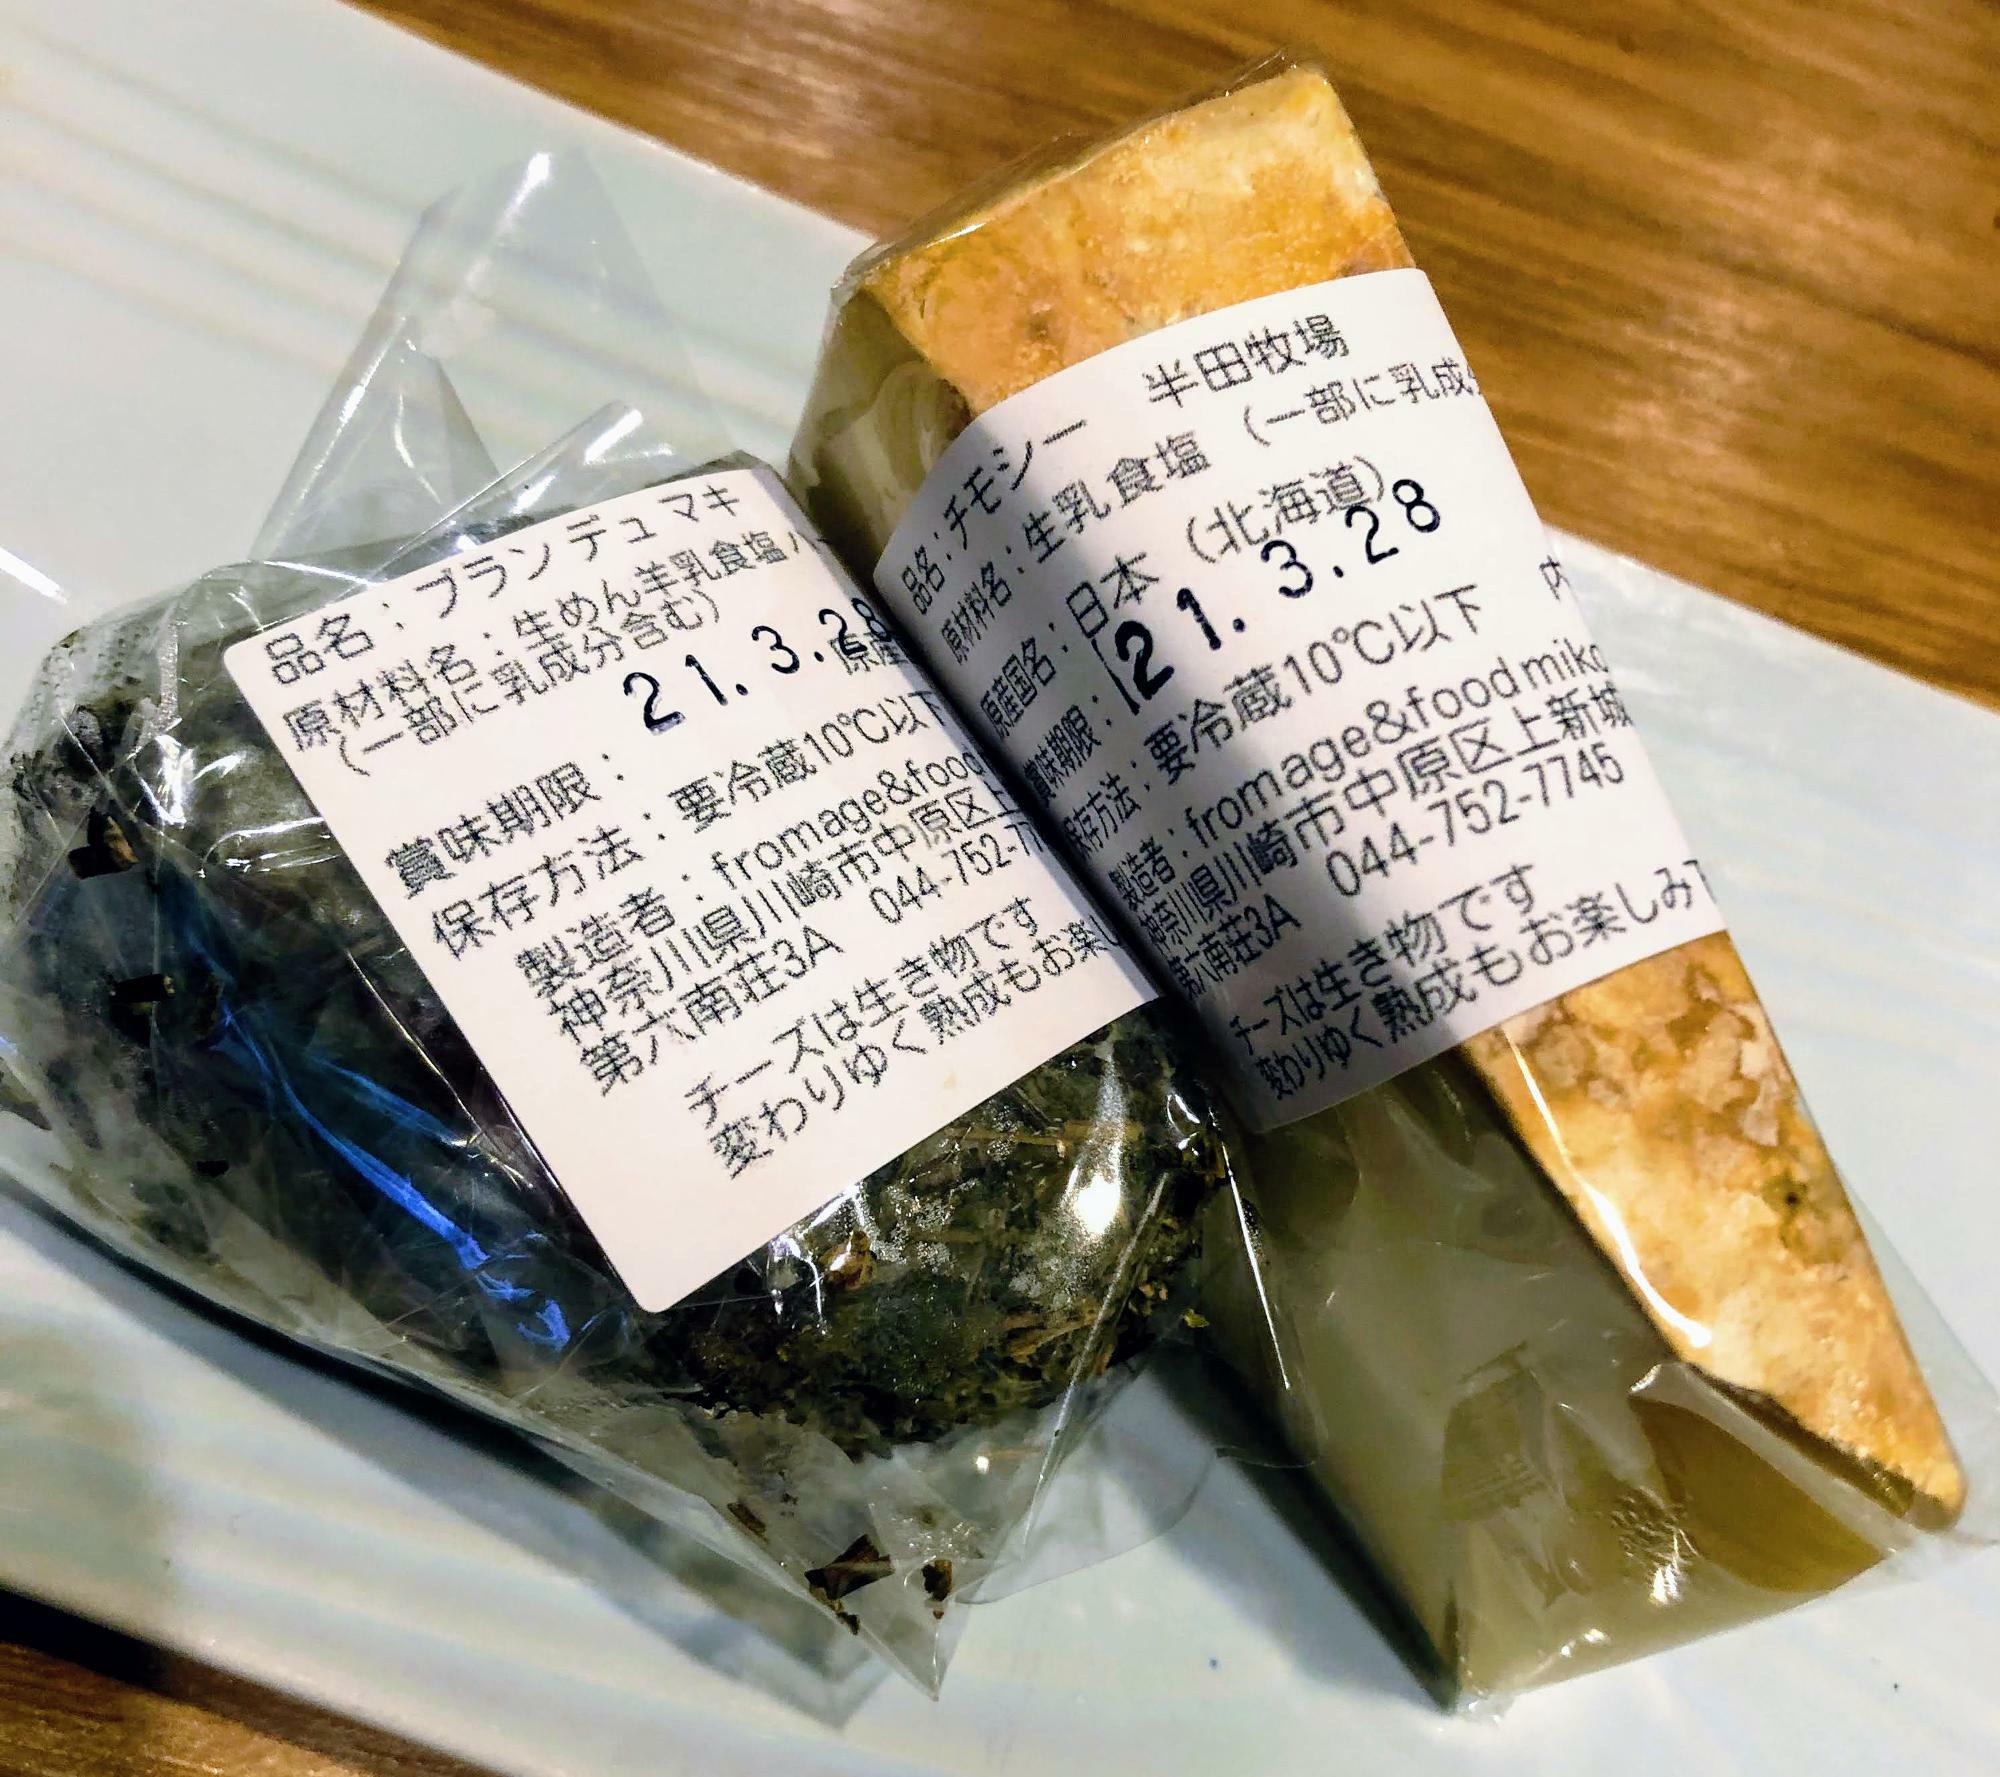 コルシカの羊乳チーズ「ブラン・デュ・マキ」と、北海道・半田牧場の「チモシー」